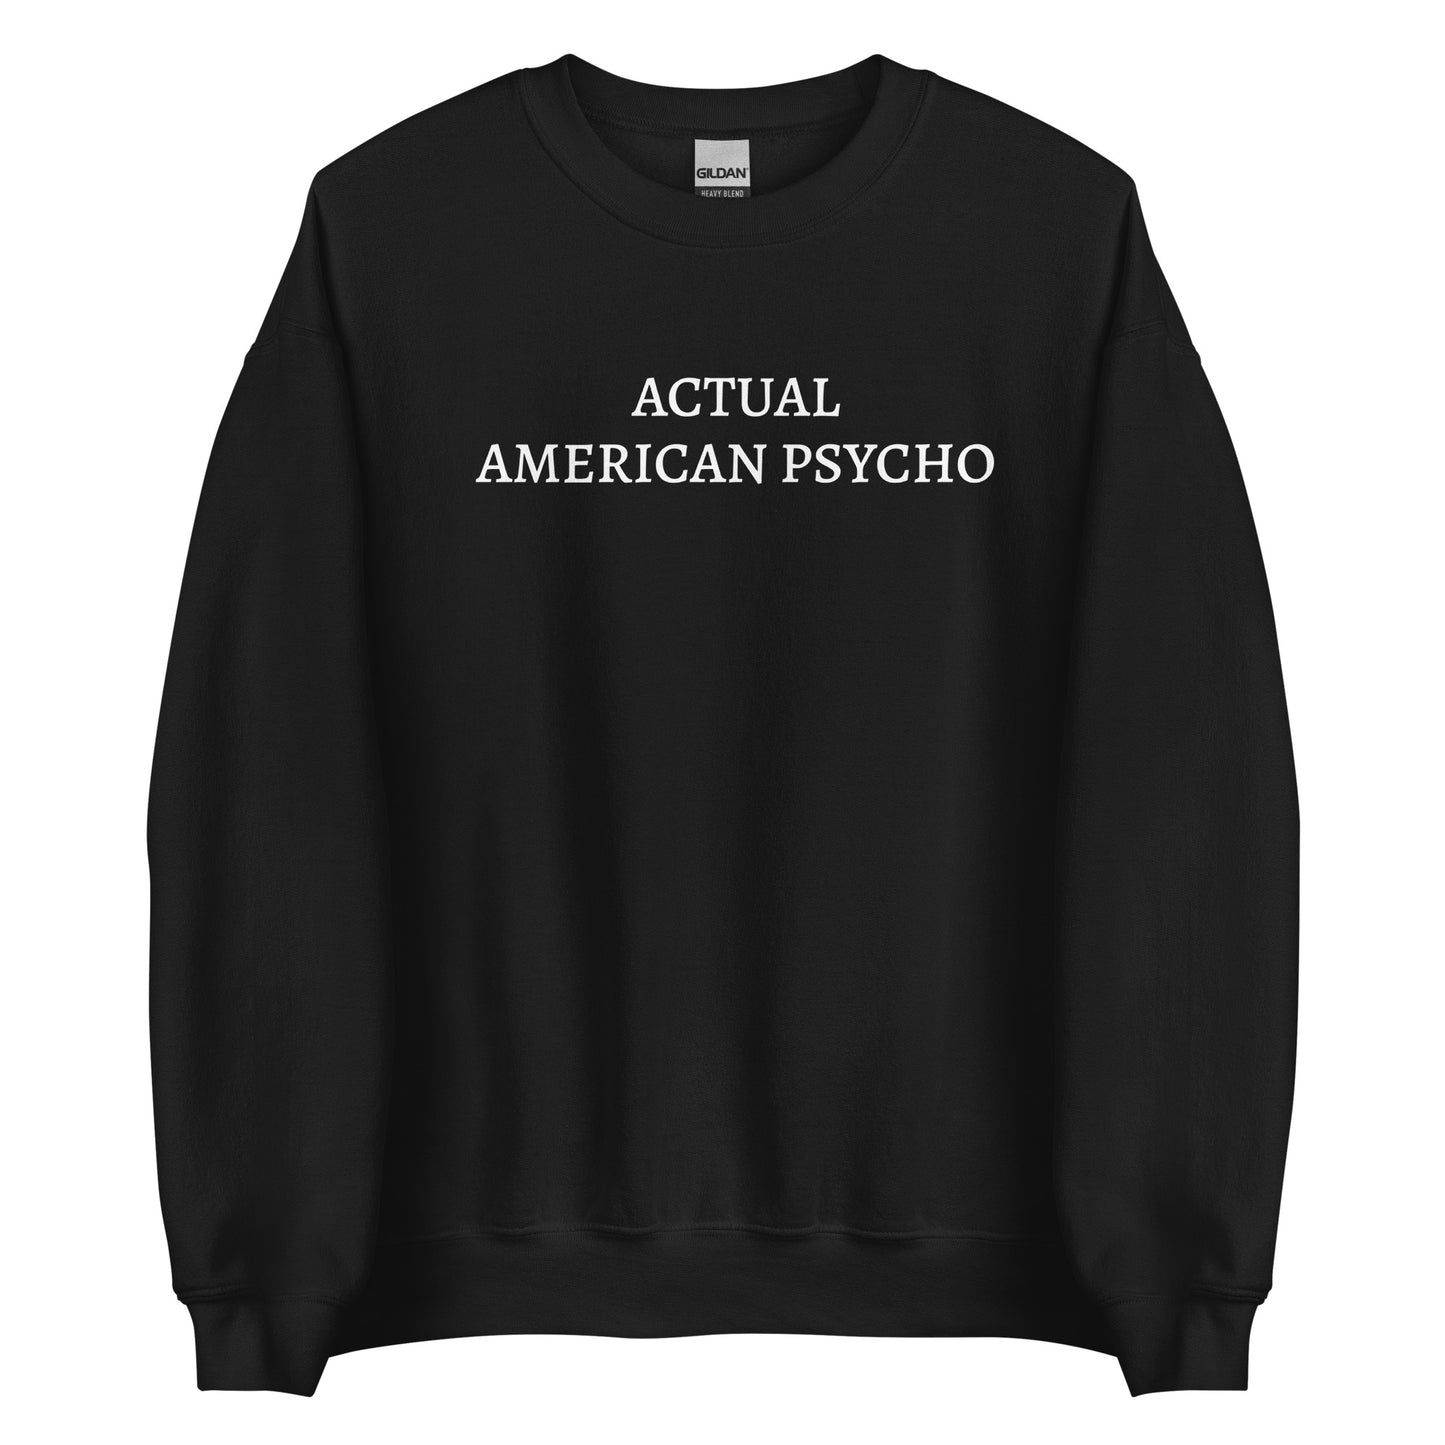 ACTUAL AMERICAN PSYCHO